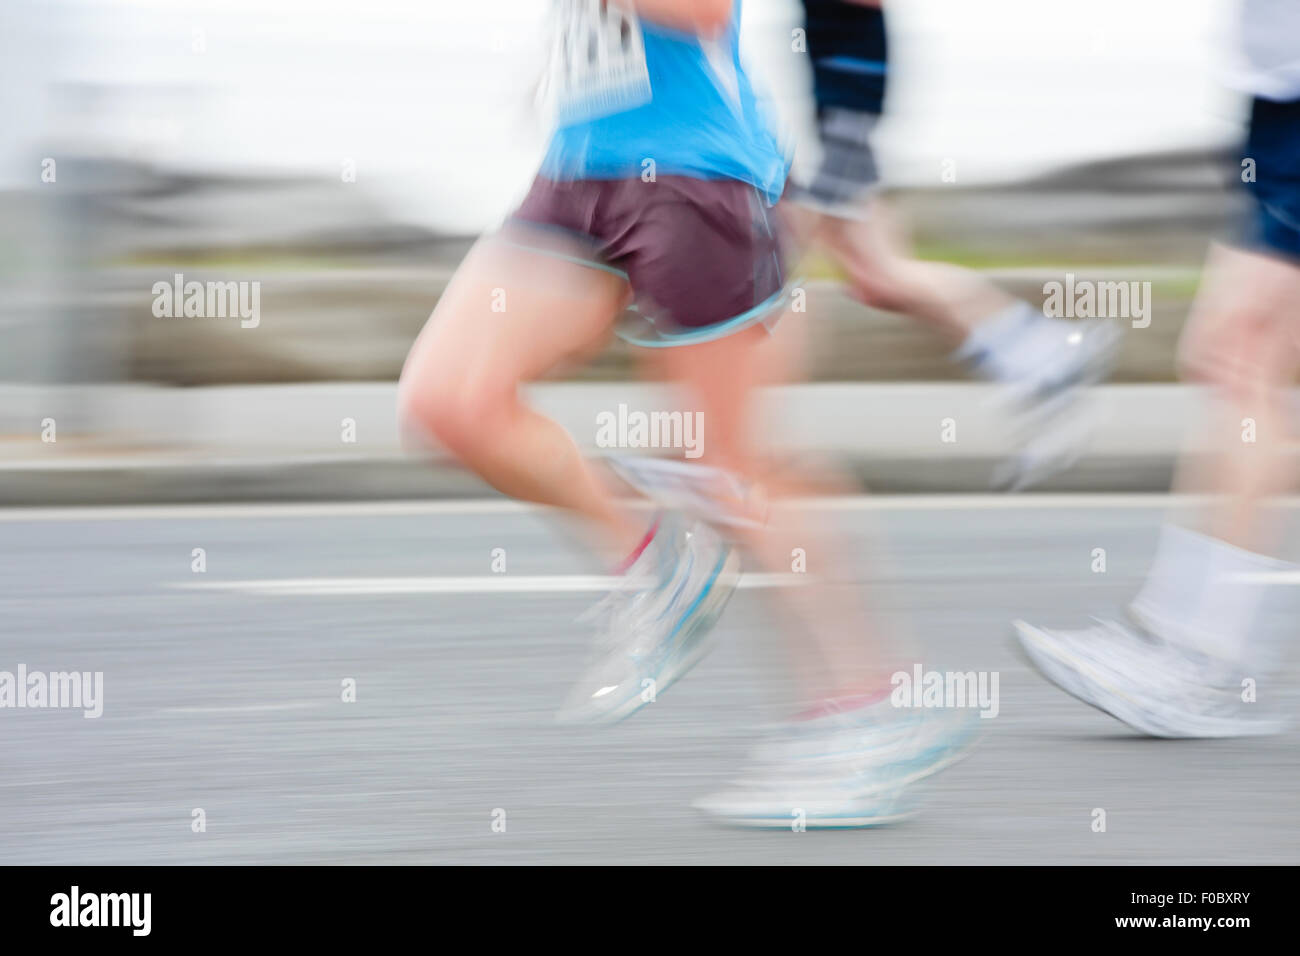 Groupe de coureurs en compétition dans la course, blurred motion. Les gens ne sont pas reconnaissables Banque D'Images